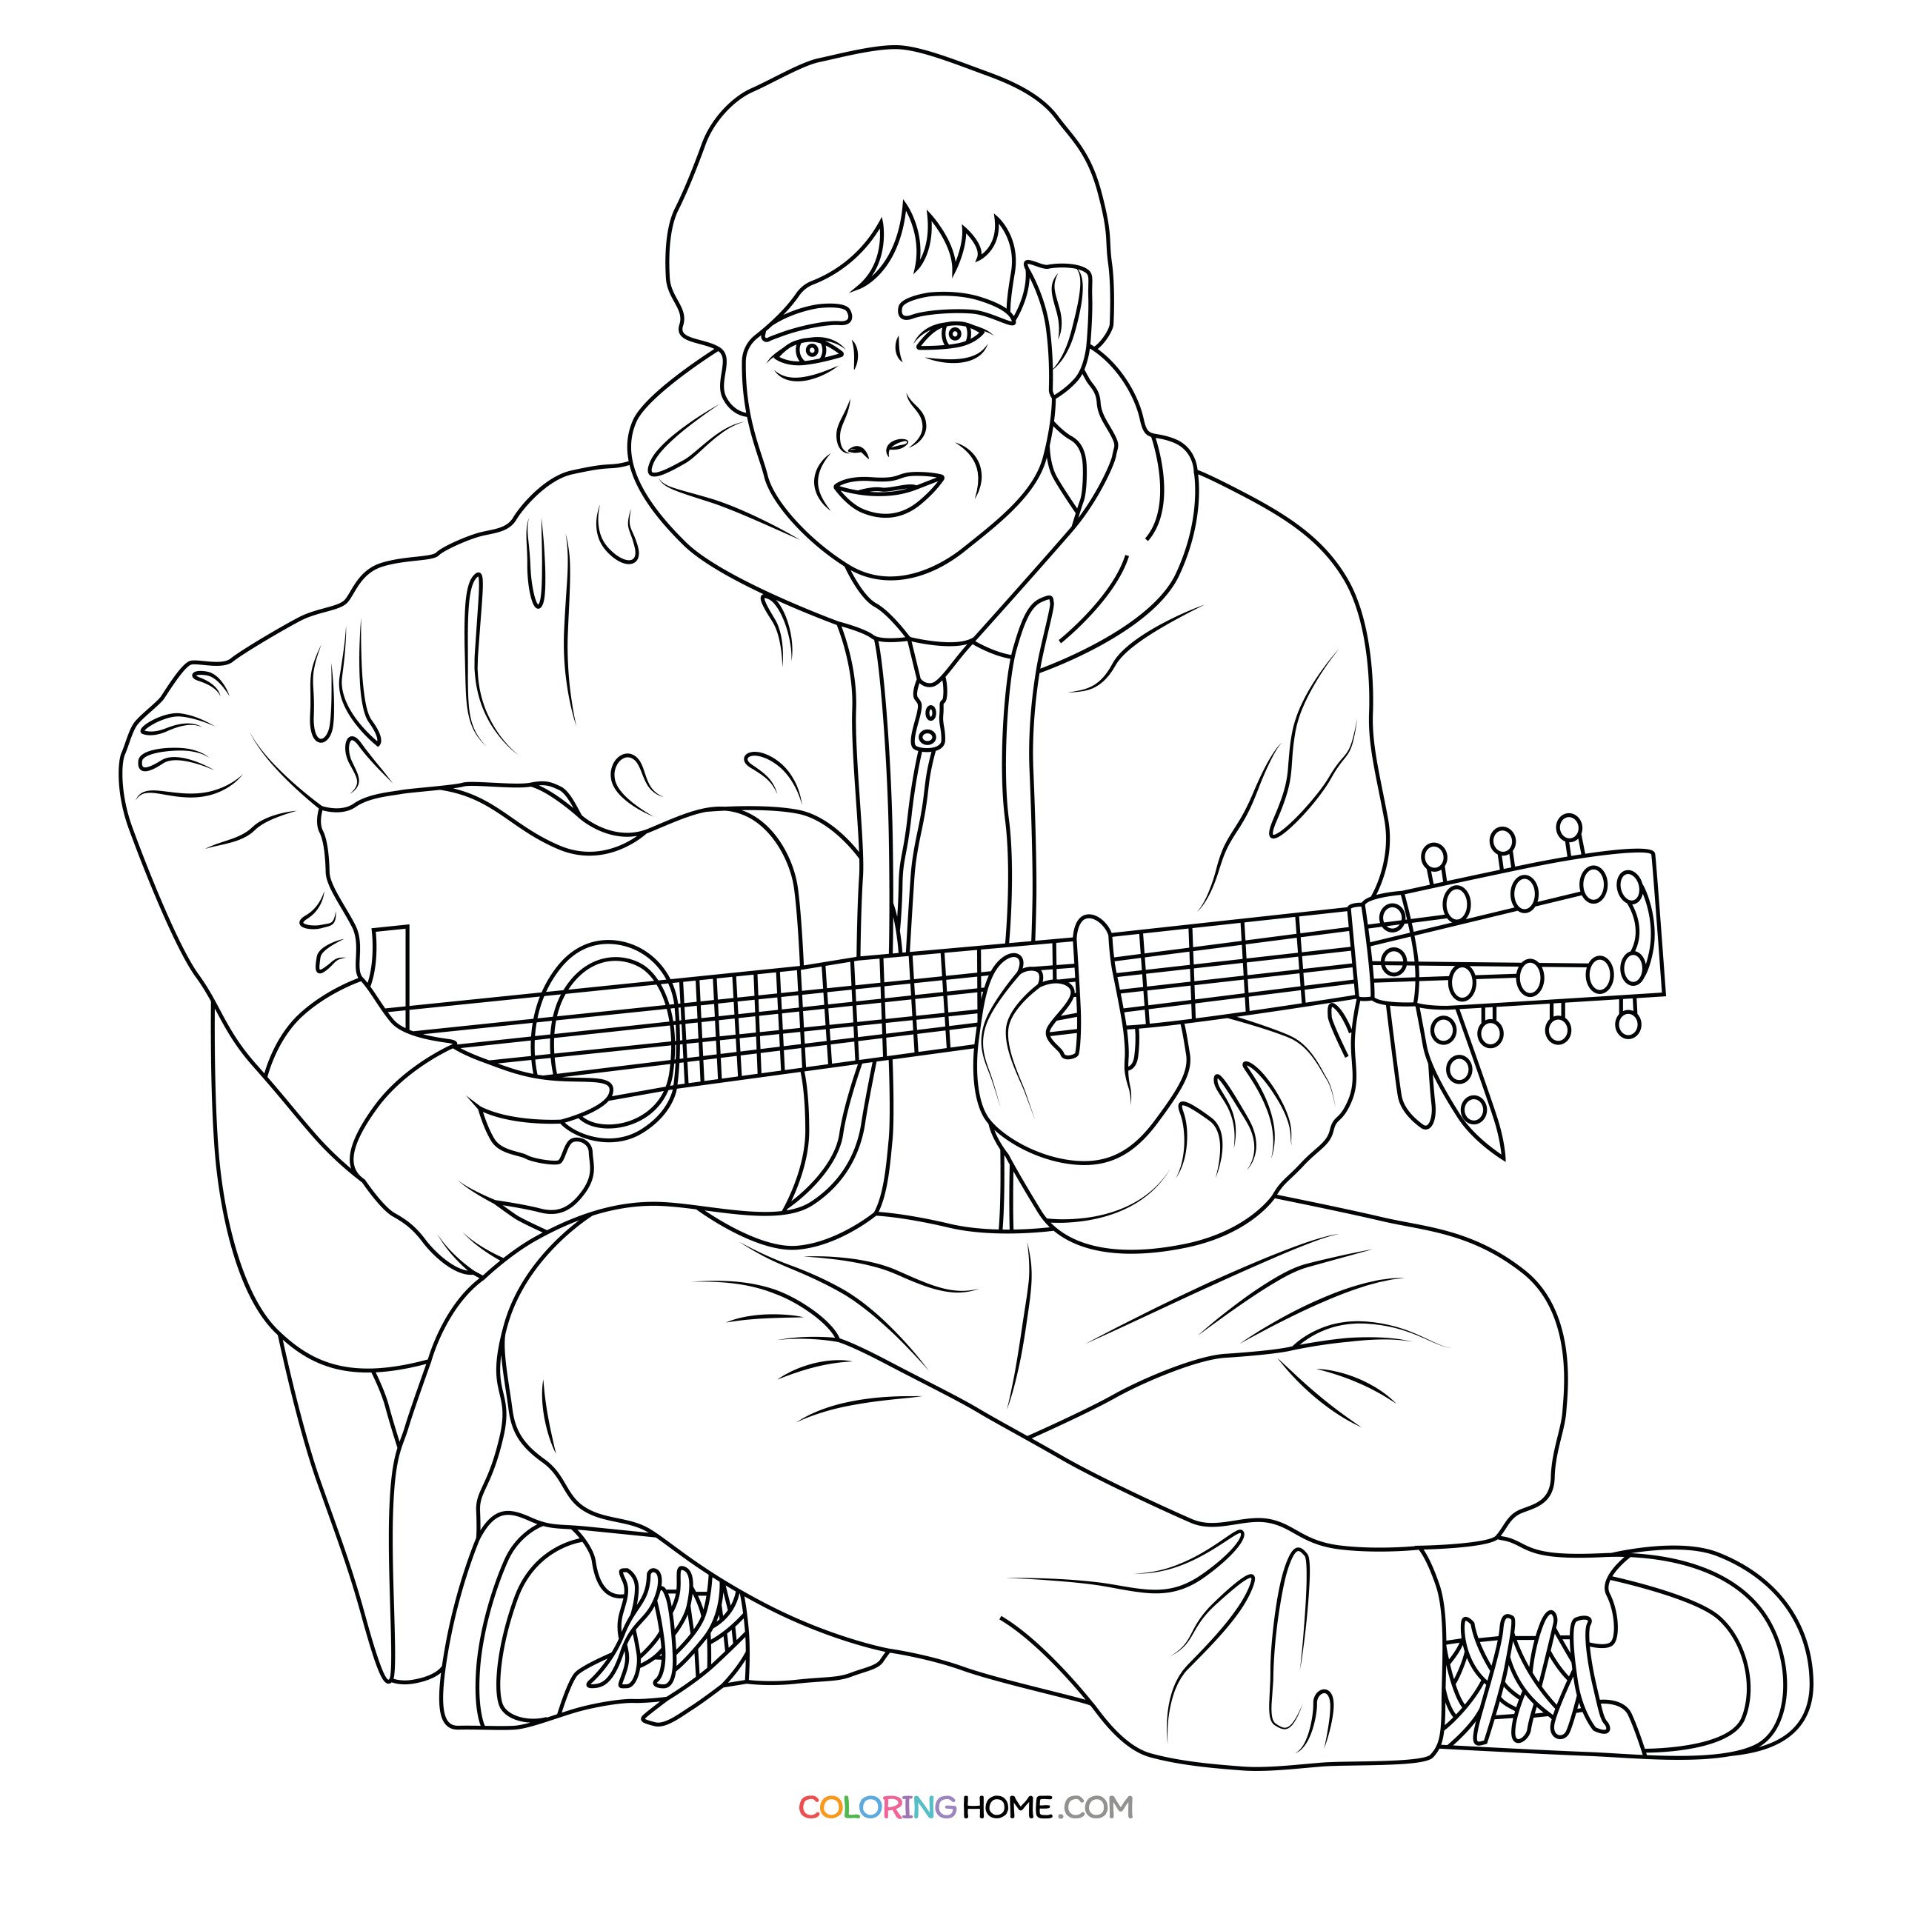 Ed Sheeran coloring page